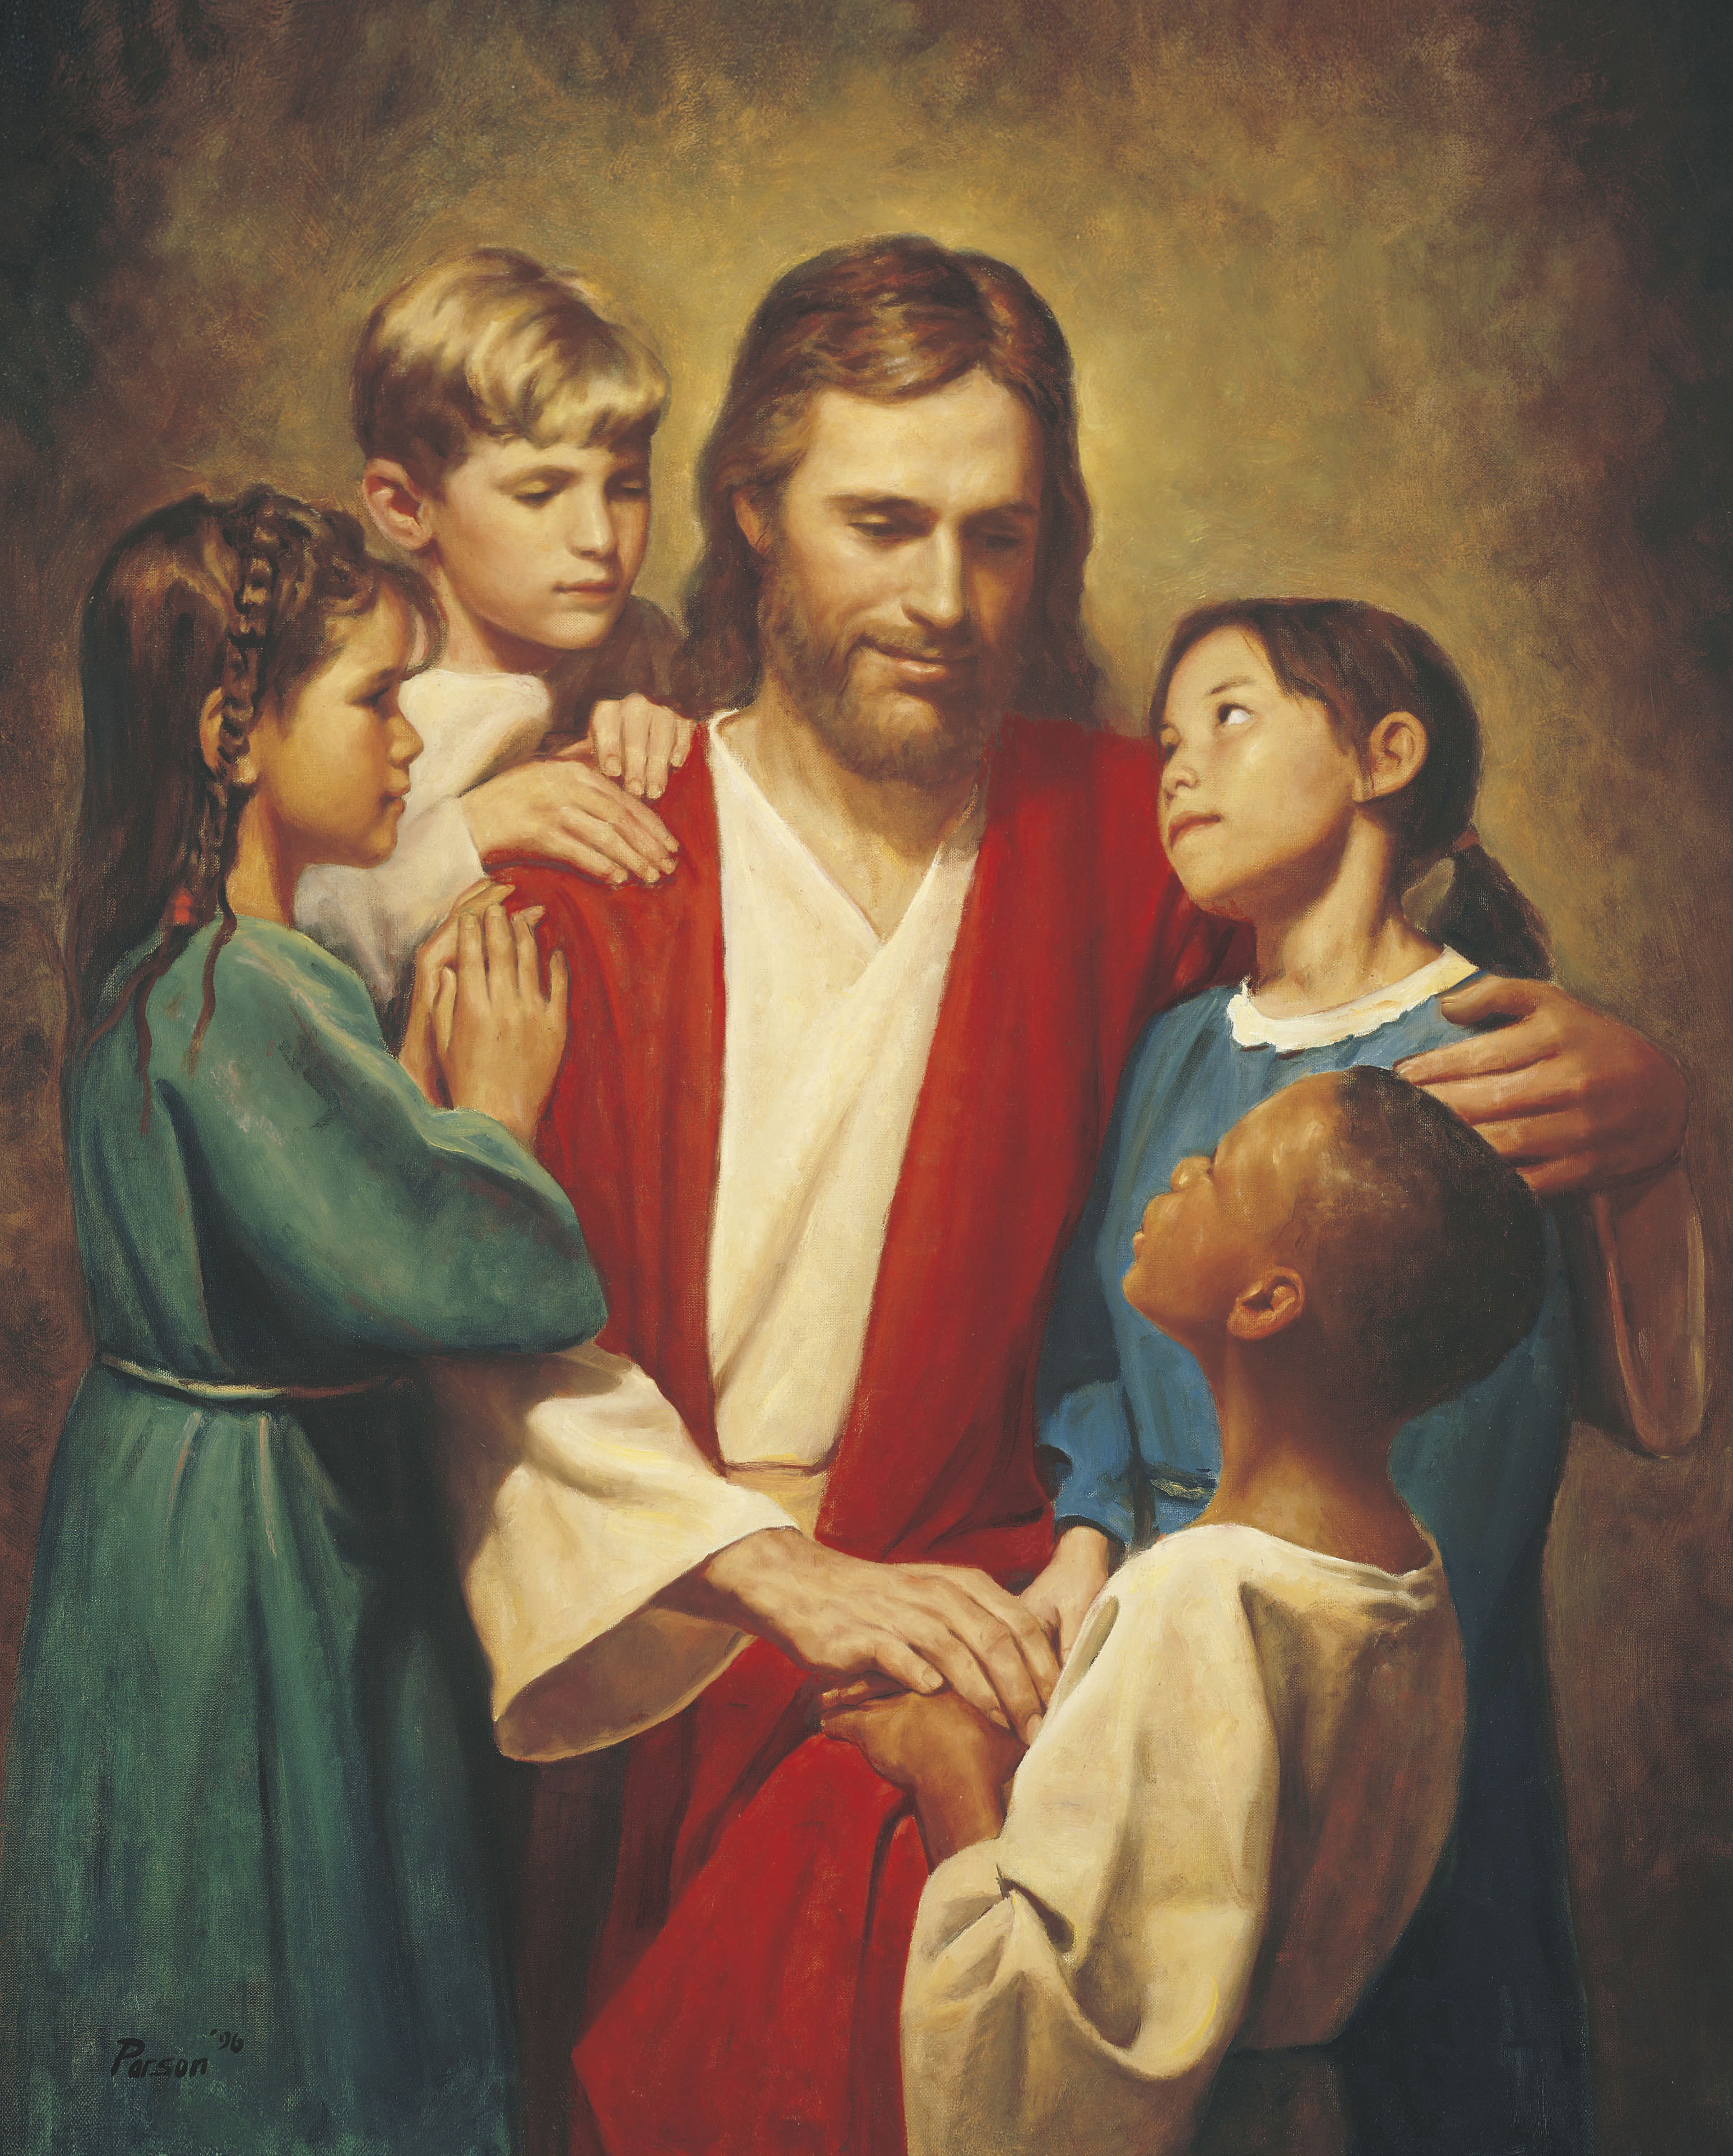 Christus met kinderen uit alle delen van de wereld (Christus met kinderen)